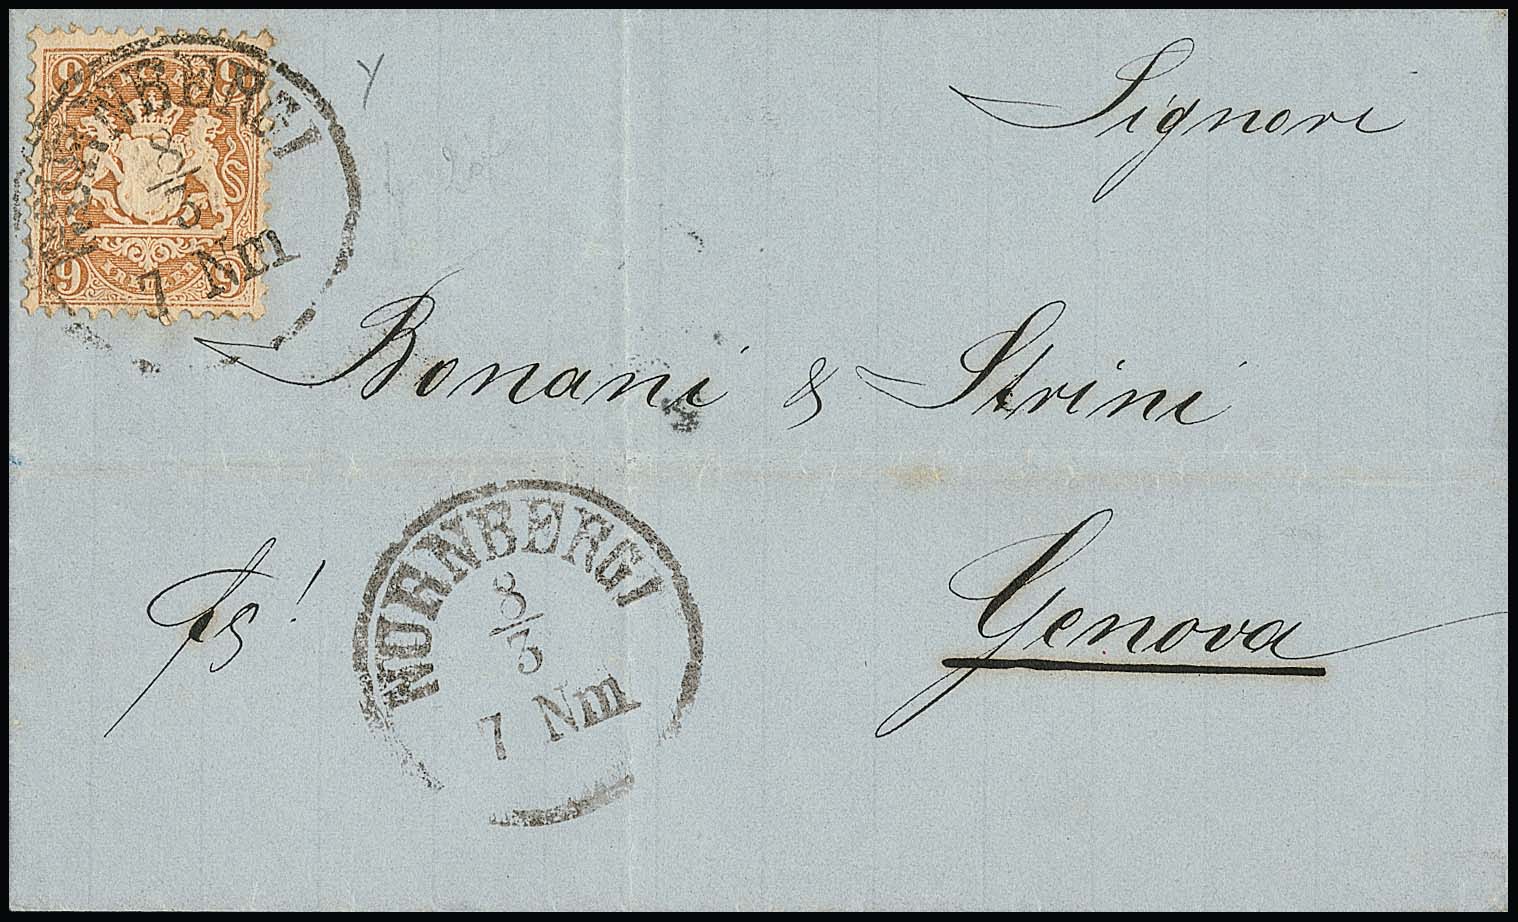 Los-Nr.: 1862